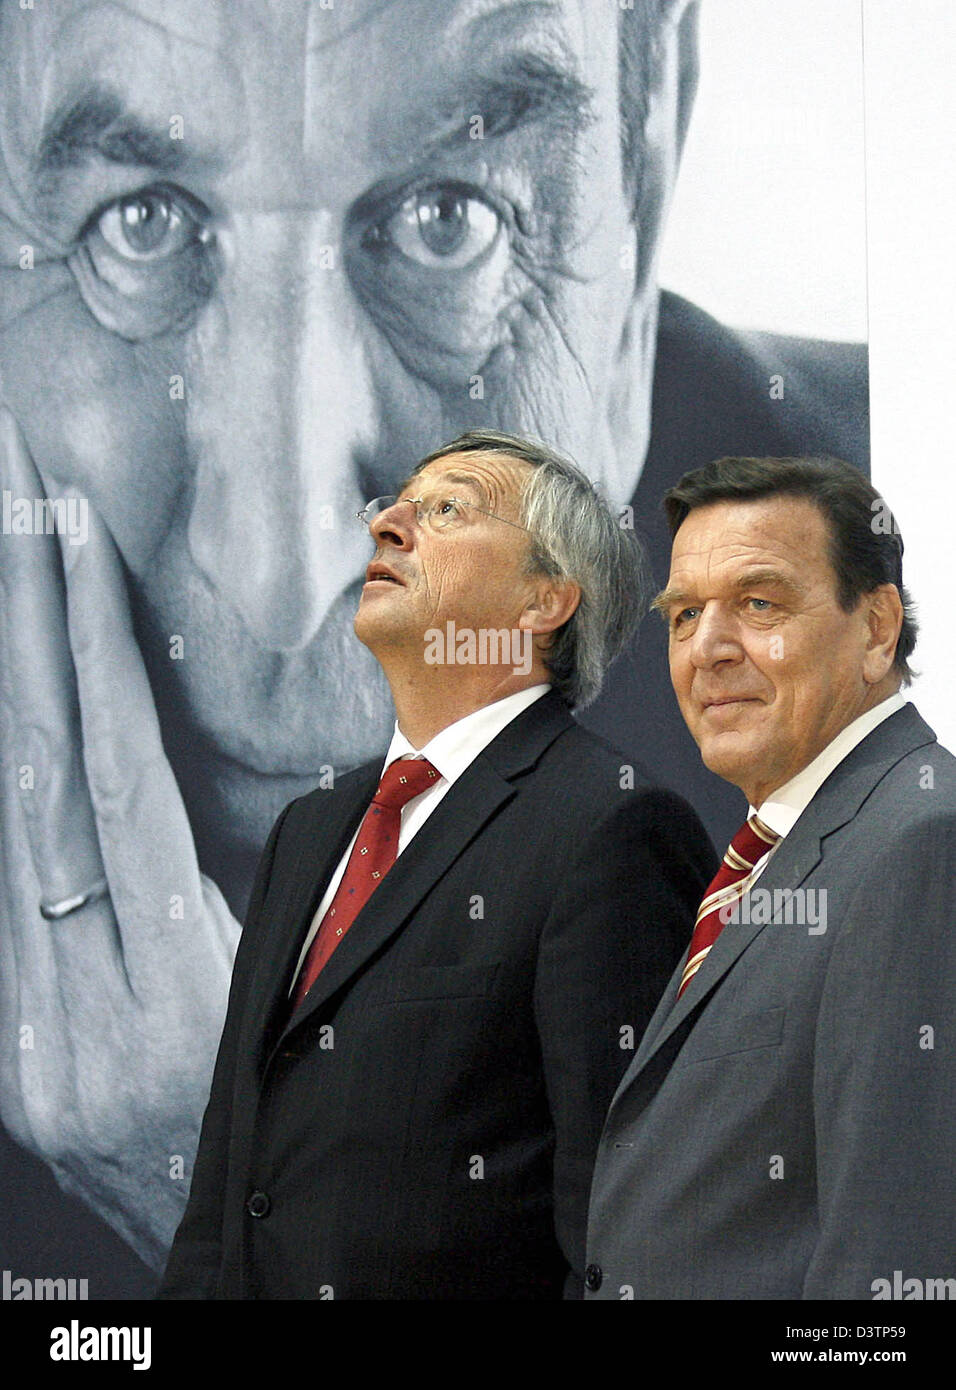 L'ex cancelliere tedesco Gerhard Schroeder (R) stans accanto al primo ministro del Lussemburgo Jean Claude Juncker a Schroeder's presentazione libro di "decisioni - la mia vita nella politica" (Entscheidungen - Mein Leben in der Politik) di Berlino, Germania, giovedì 26 ottobre 2006. Foto: Wolfgang Kumm Foto Stock